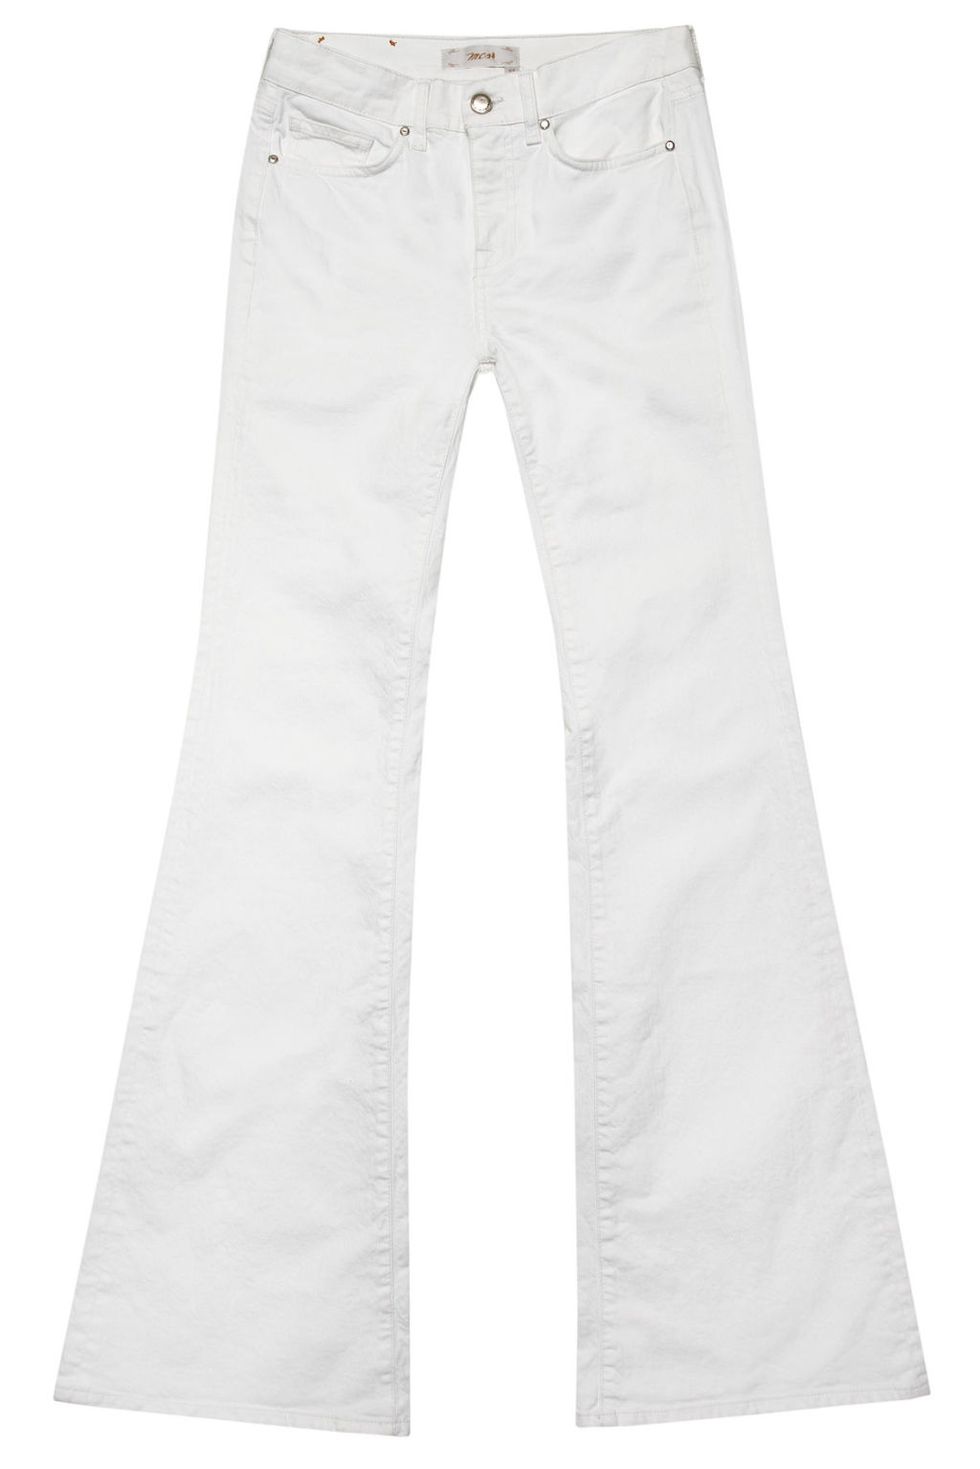 Moda in bianco per l'estate 2017 con i jeans di Mcs